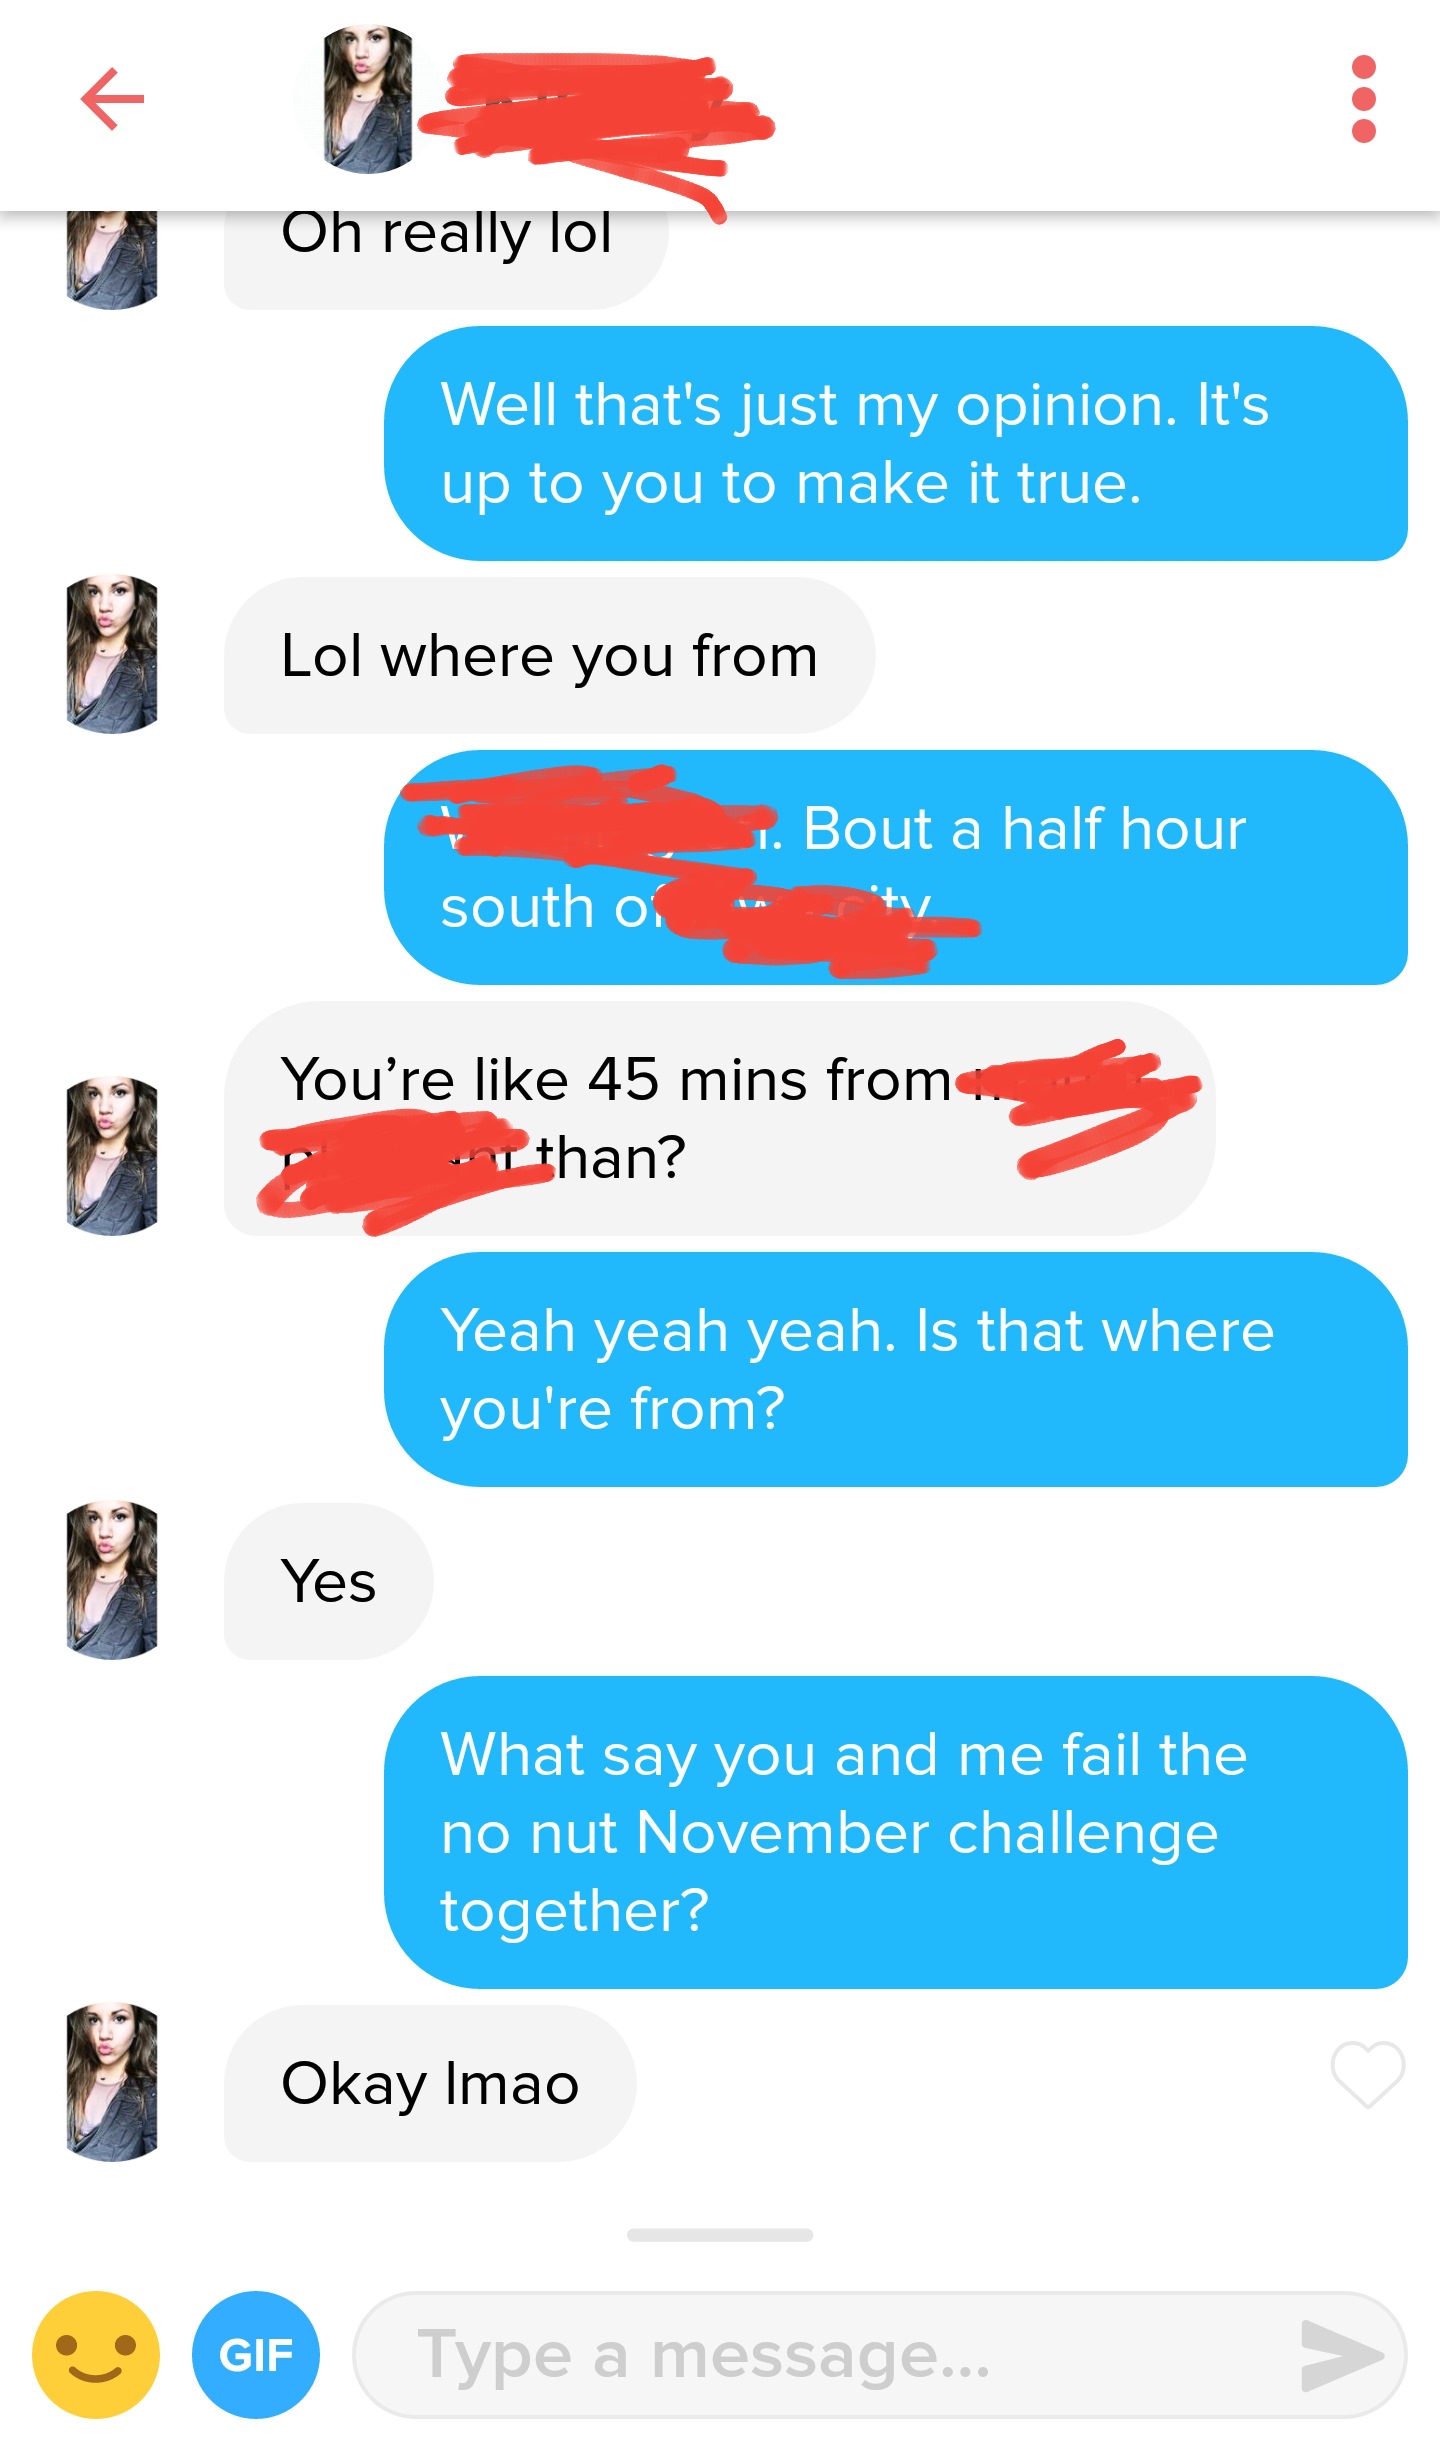 You fail no nut november